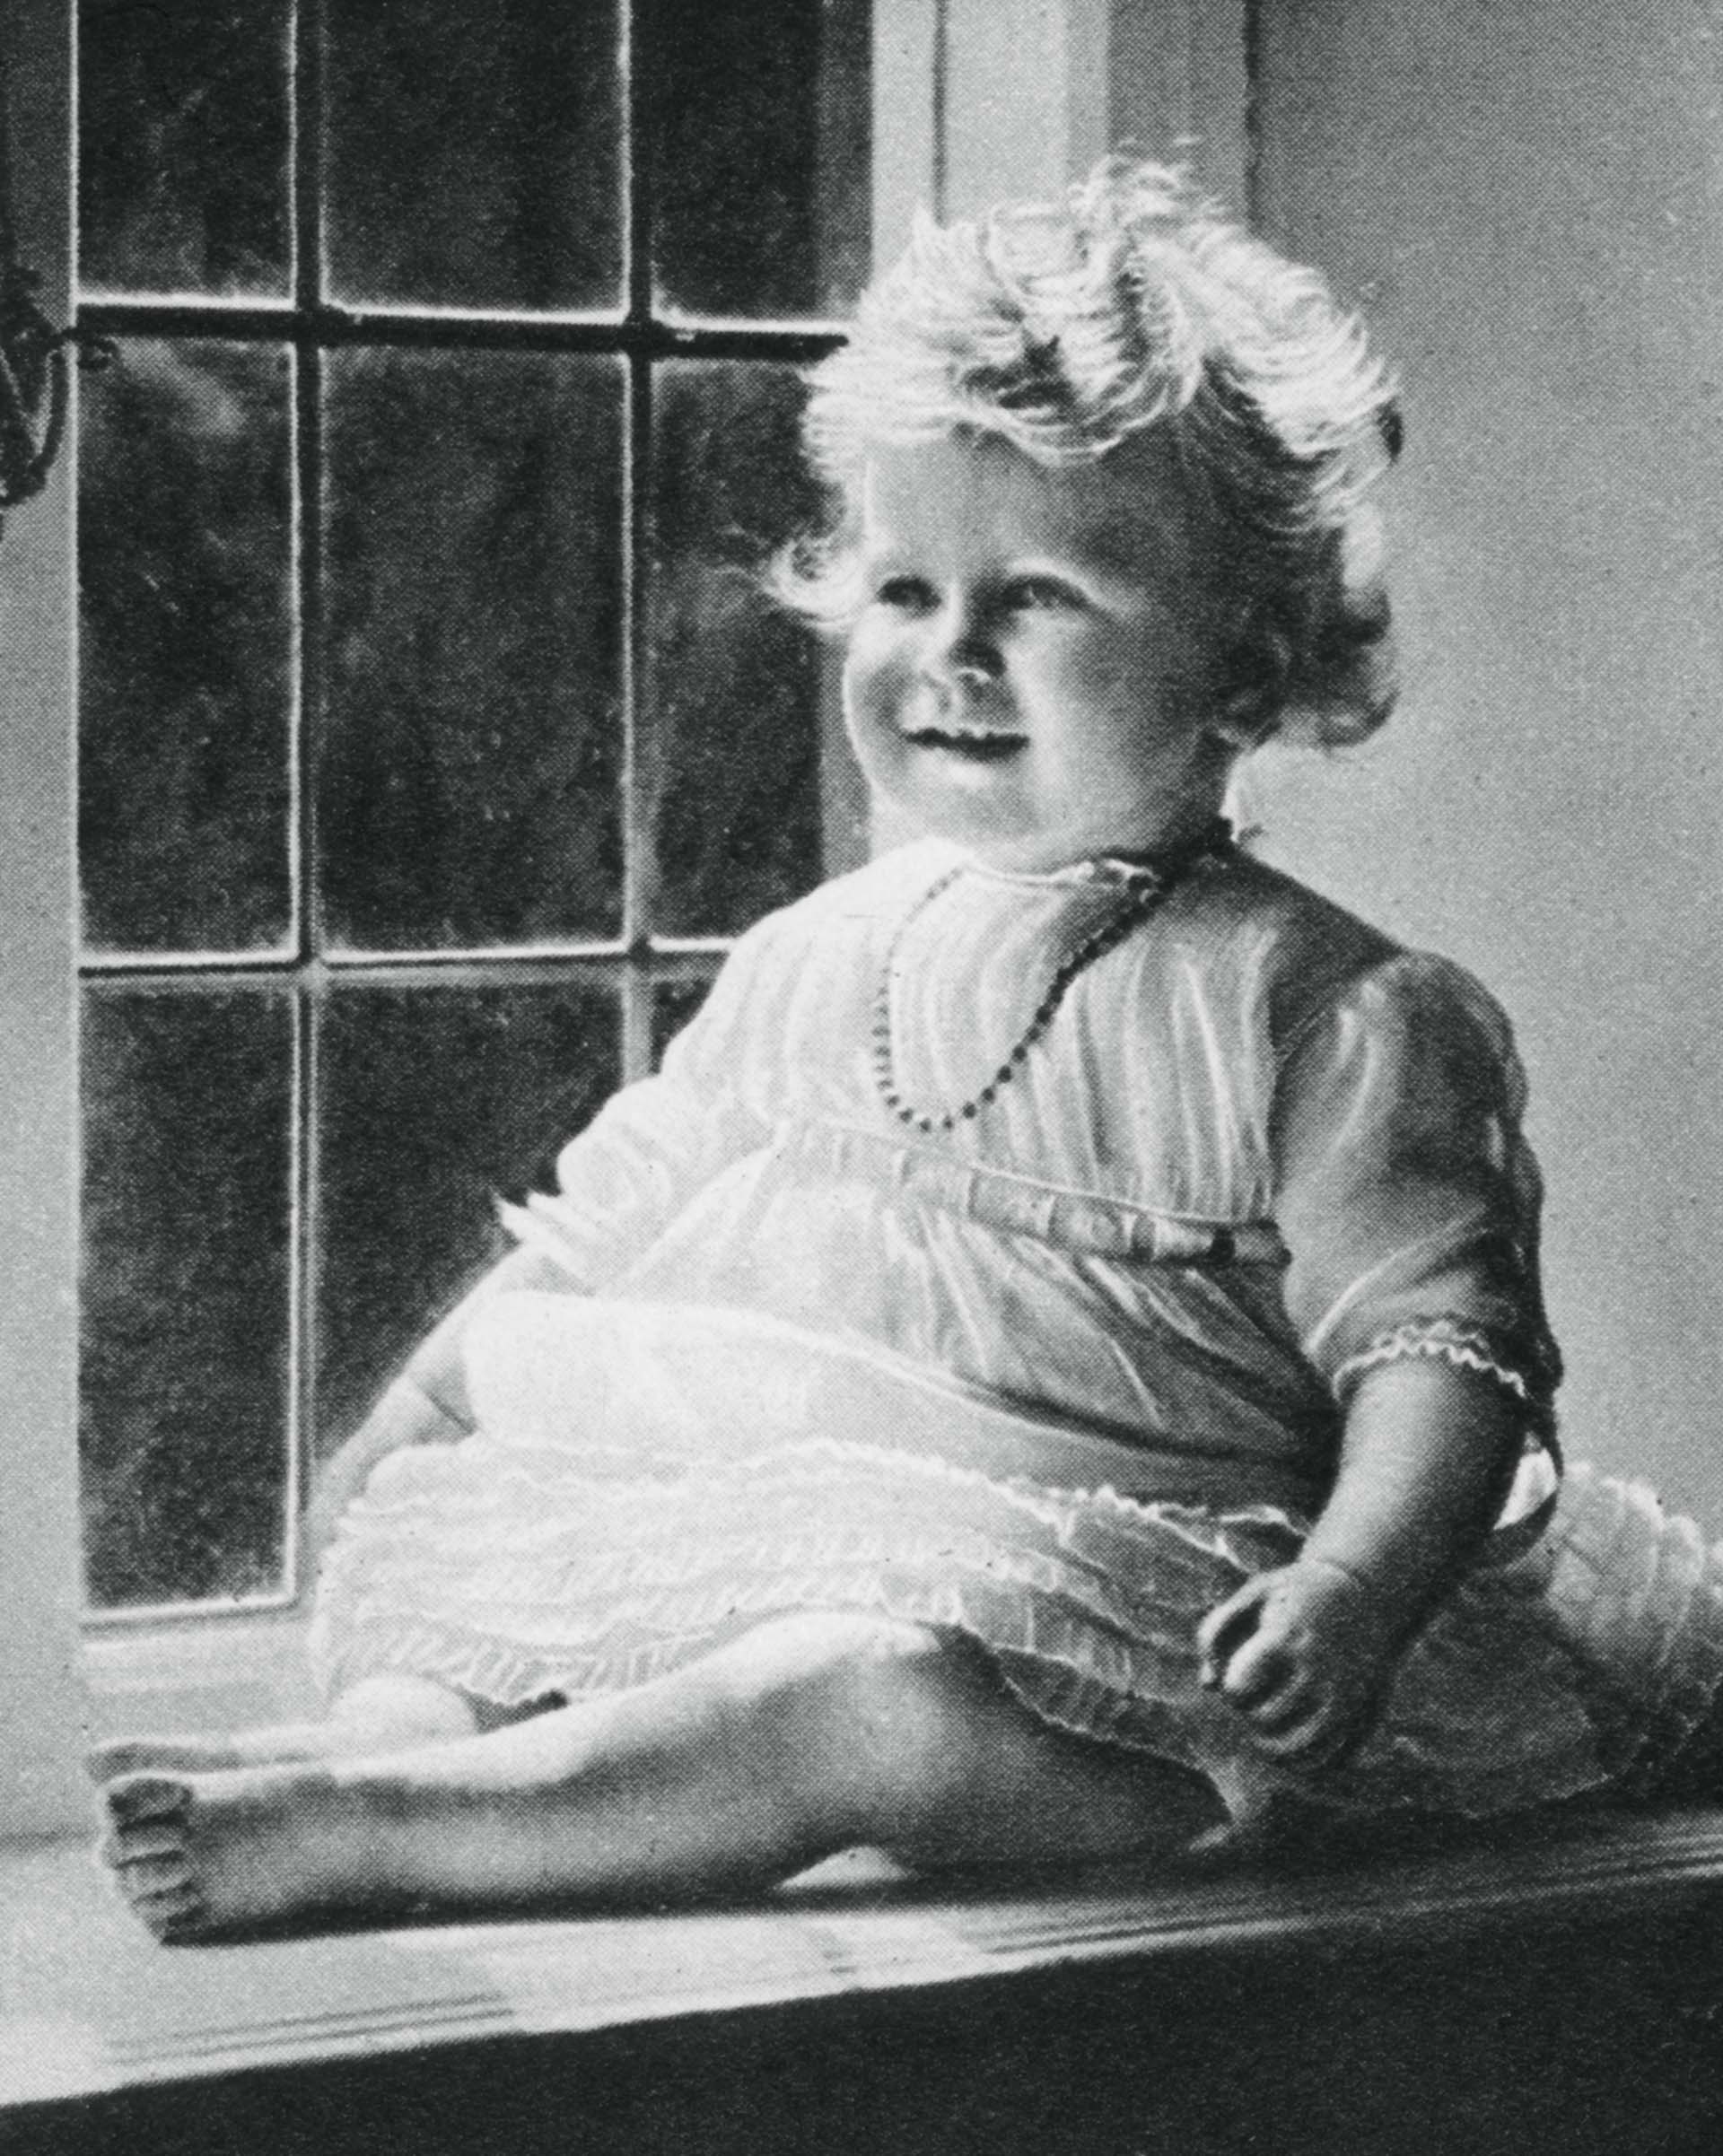 El 29 de mayo de 1926 fue bautizada bajo la religión anglicana en la capilla privada del Palacio de Buckingham, que durante la Segunda Guerra Mundial fue destruida durante el bombardeo a Londres. Quienes la conocieron en su infancia aseguran que era una niña despierta, alegre, de buen comportamiento y sensible. Cuando Isabel tenía dos años, Winston Churchill la describió como "un personaje". "Tiene un aire de autoridad y reflexión sorprendentes para un niño", dijo el ex Primer Ministro del Reino Unido